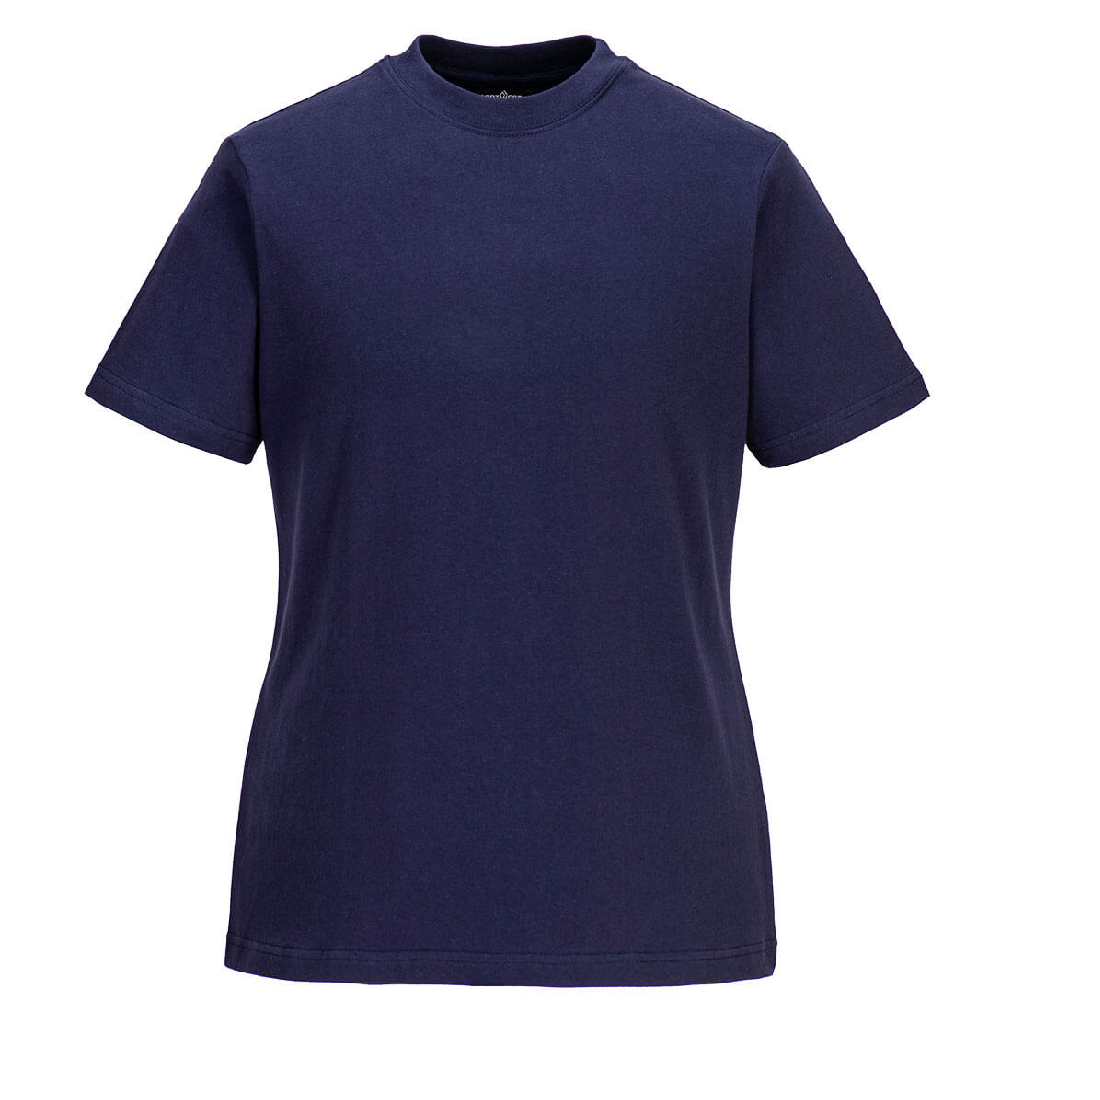 Portwest Women's Cotton T-Shirt - B192